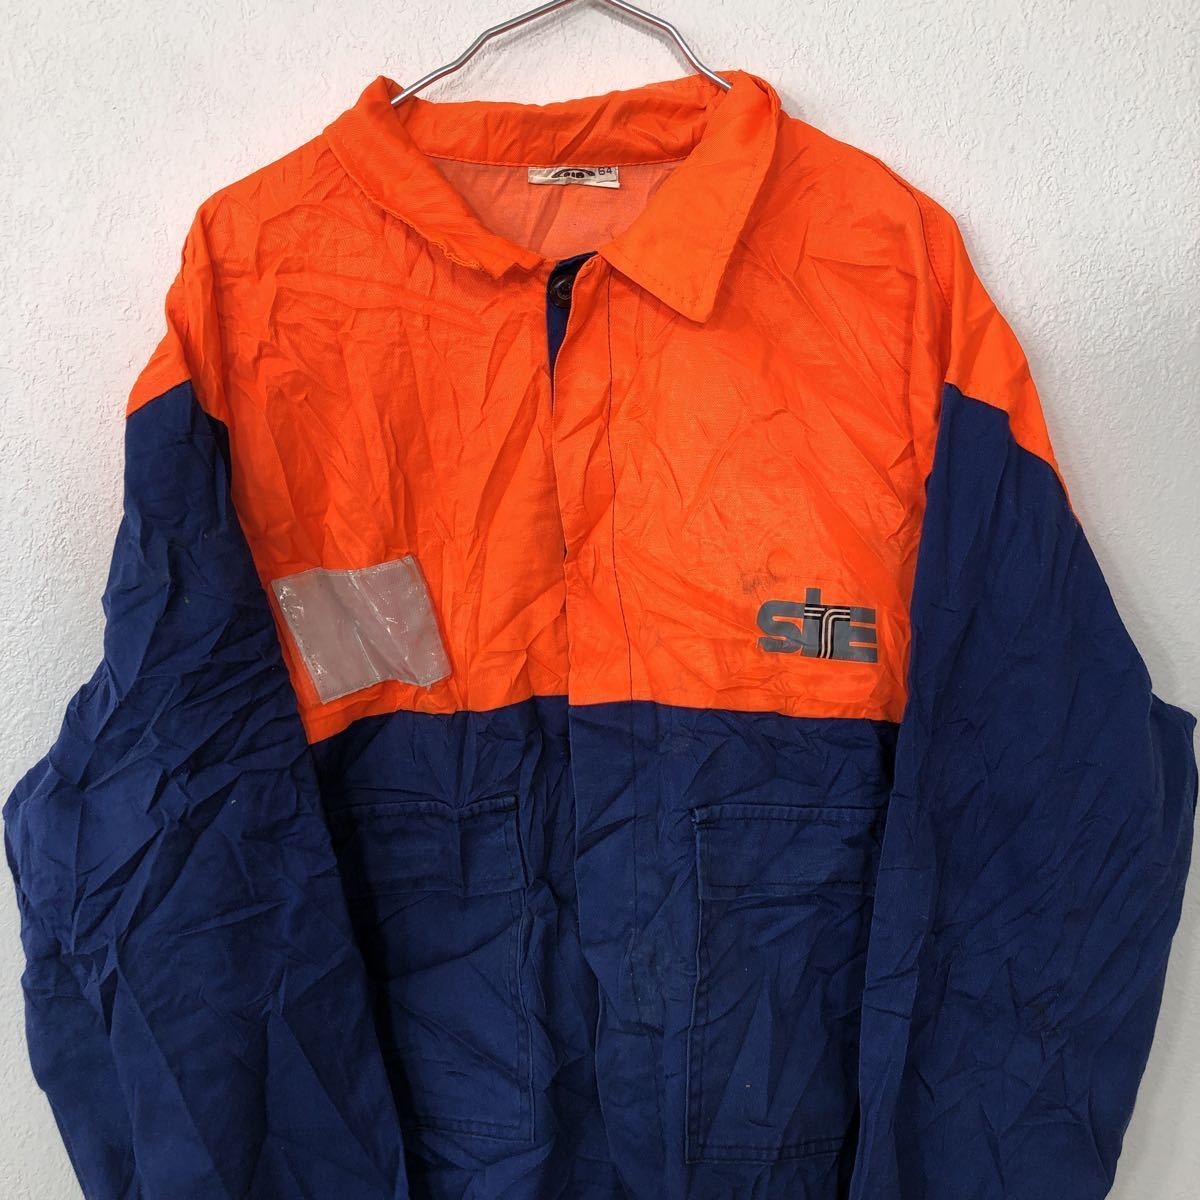 SIR ユーロワーク ワークジャケット XLサイズ程度 ルーマニア製 オレンジ ネイビー ビッグサイズ ワーク 古着卸 アメリカ仕入 t2110-3972_画像2